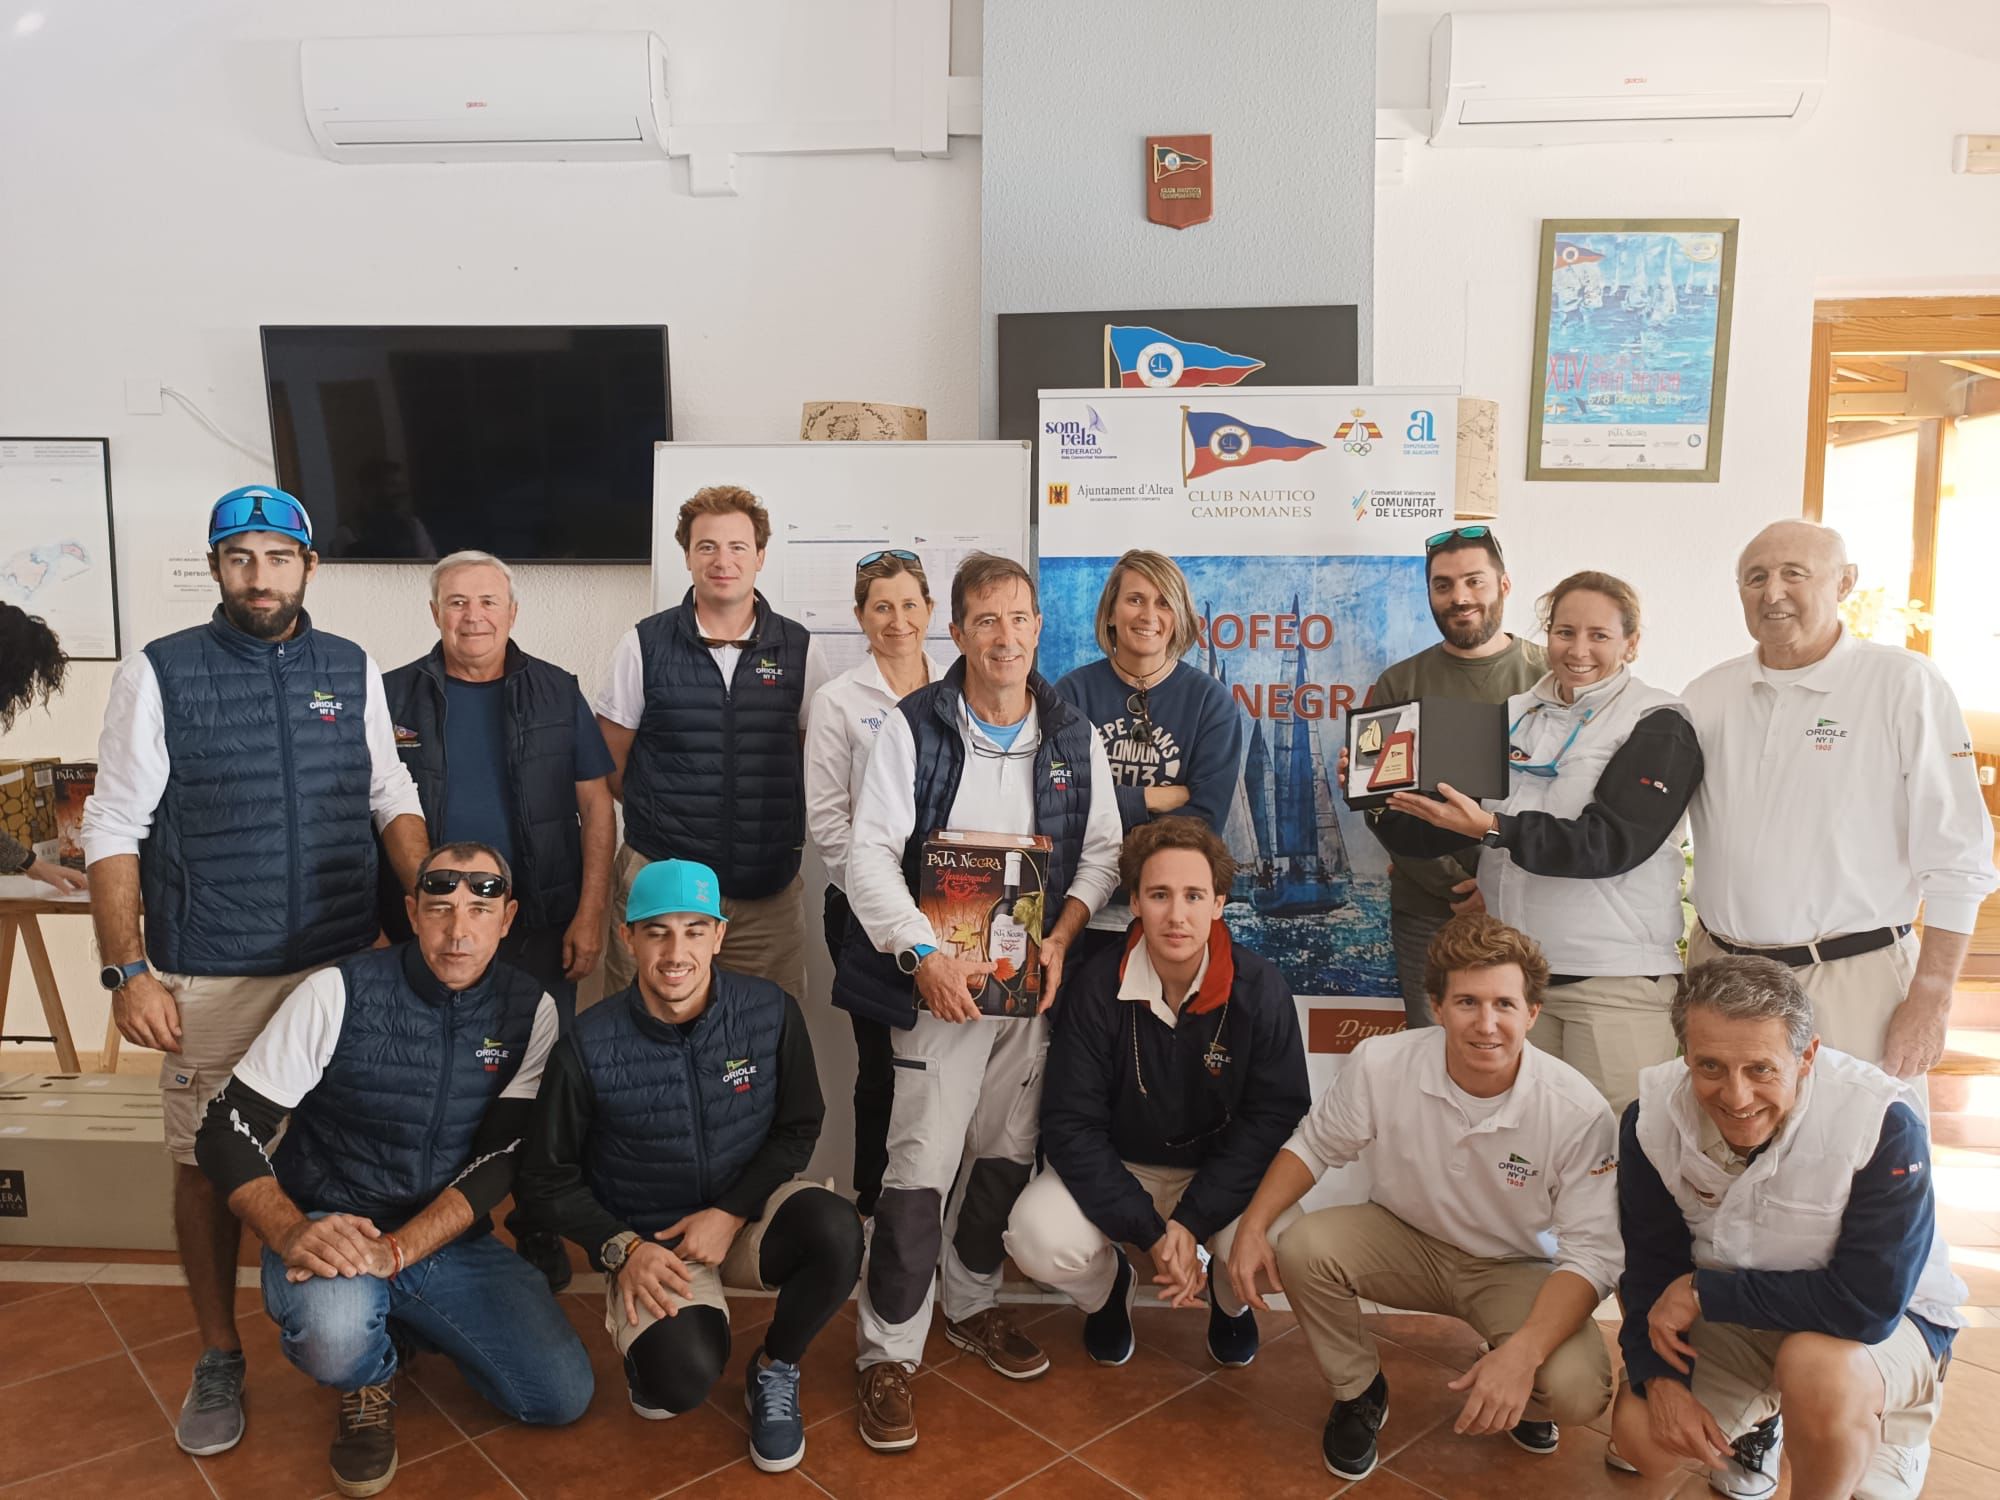 Els regidors d’Esports i Turisme, Pere Barber i Xelo González, van estar ahir en el lliurament de premis del XXII Trofeo Pata Negra en el Club Nàutic Campomanes. Enhorabona als guanyadors!